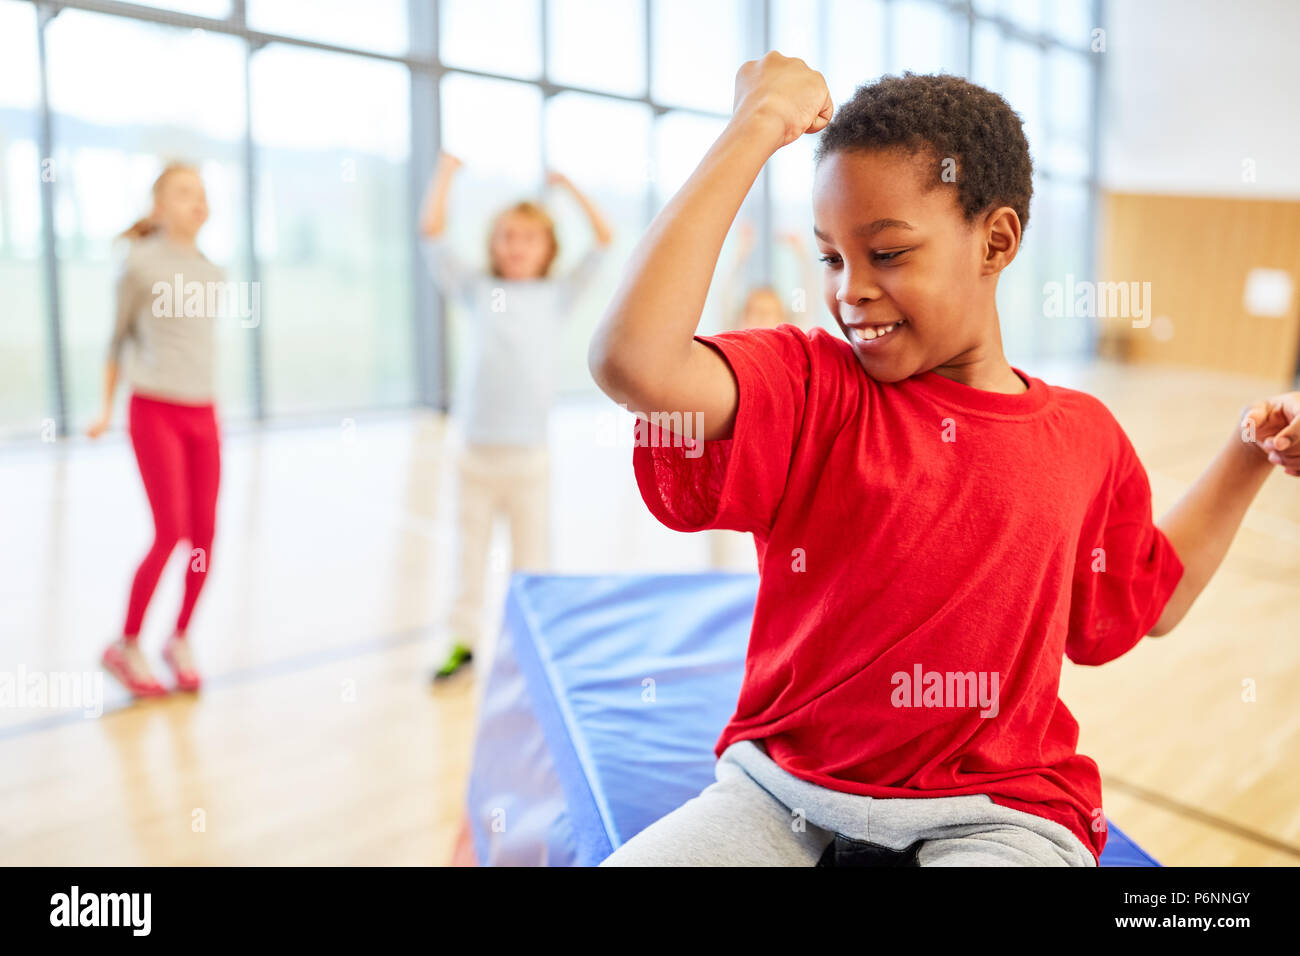 Sportliche junge zeigt seine Muskeln in der Grundschule Sportunterricht Stockfoto